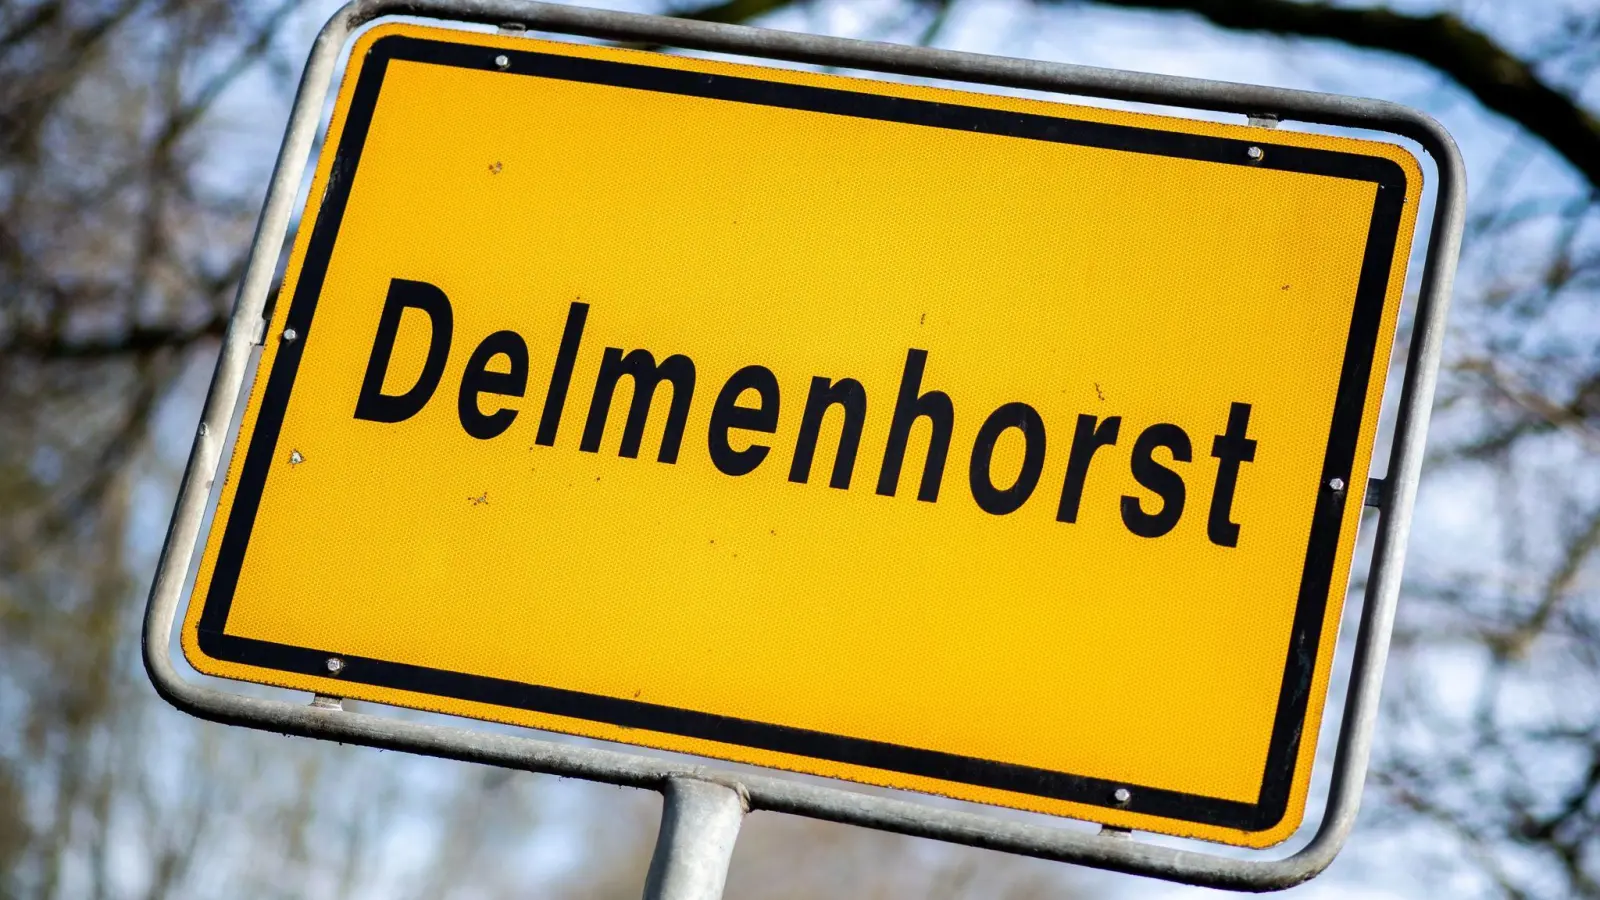 Delmenhorst war im vergangenen Jahr Spitzenreiter beim Anstieg der Mieten. (Foto: Hauke-Christian Dittrich/dpa)